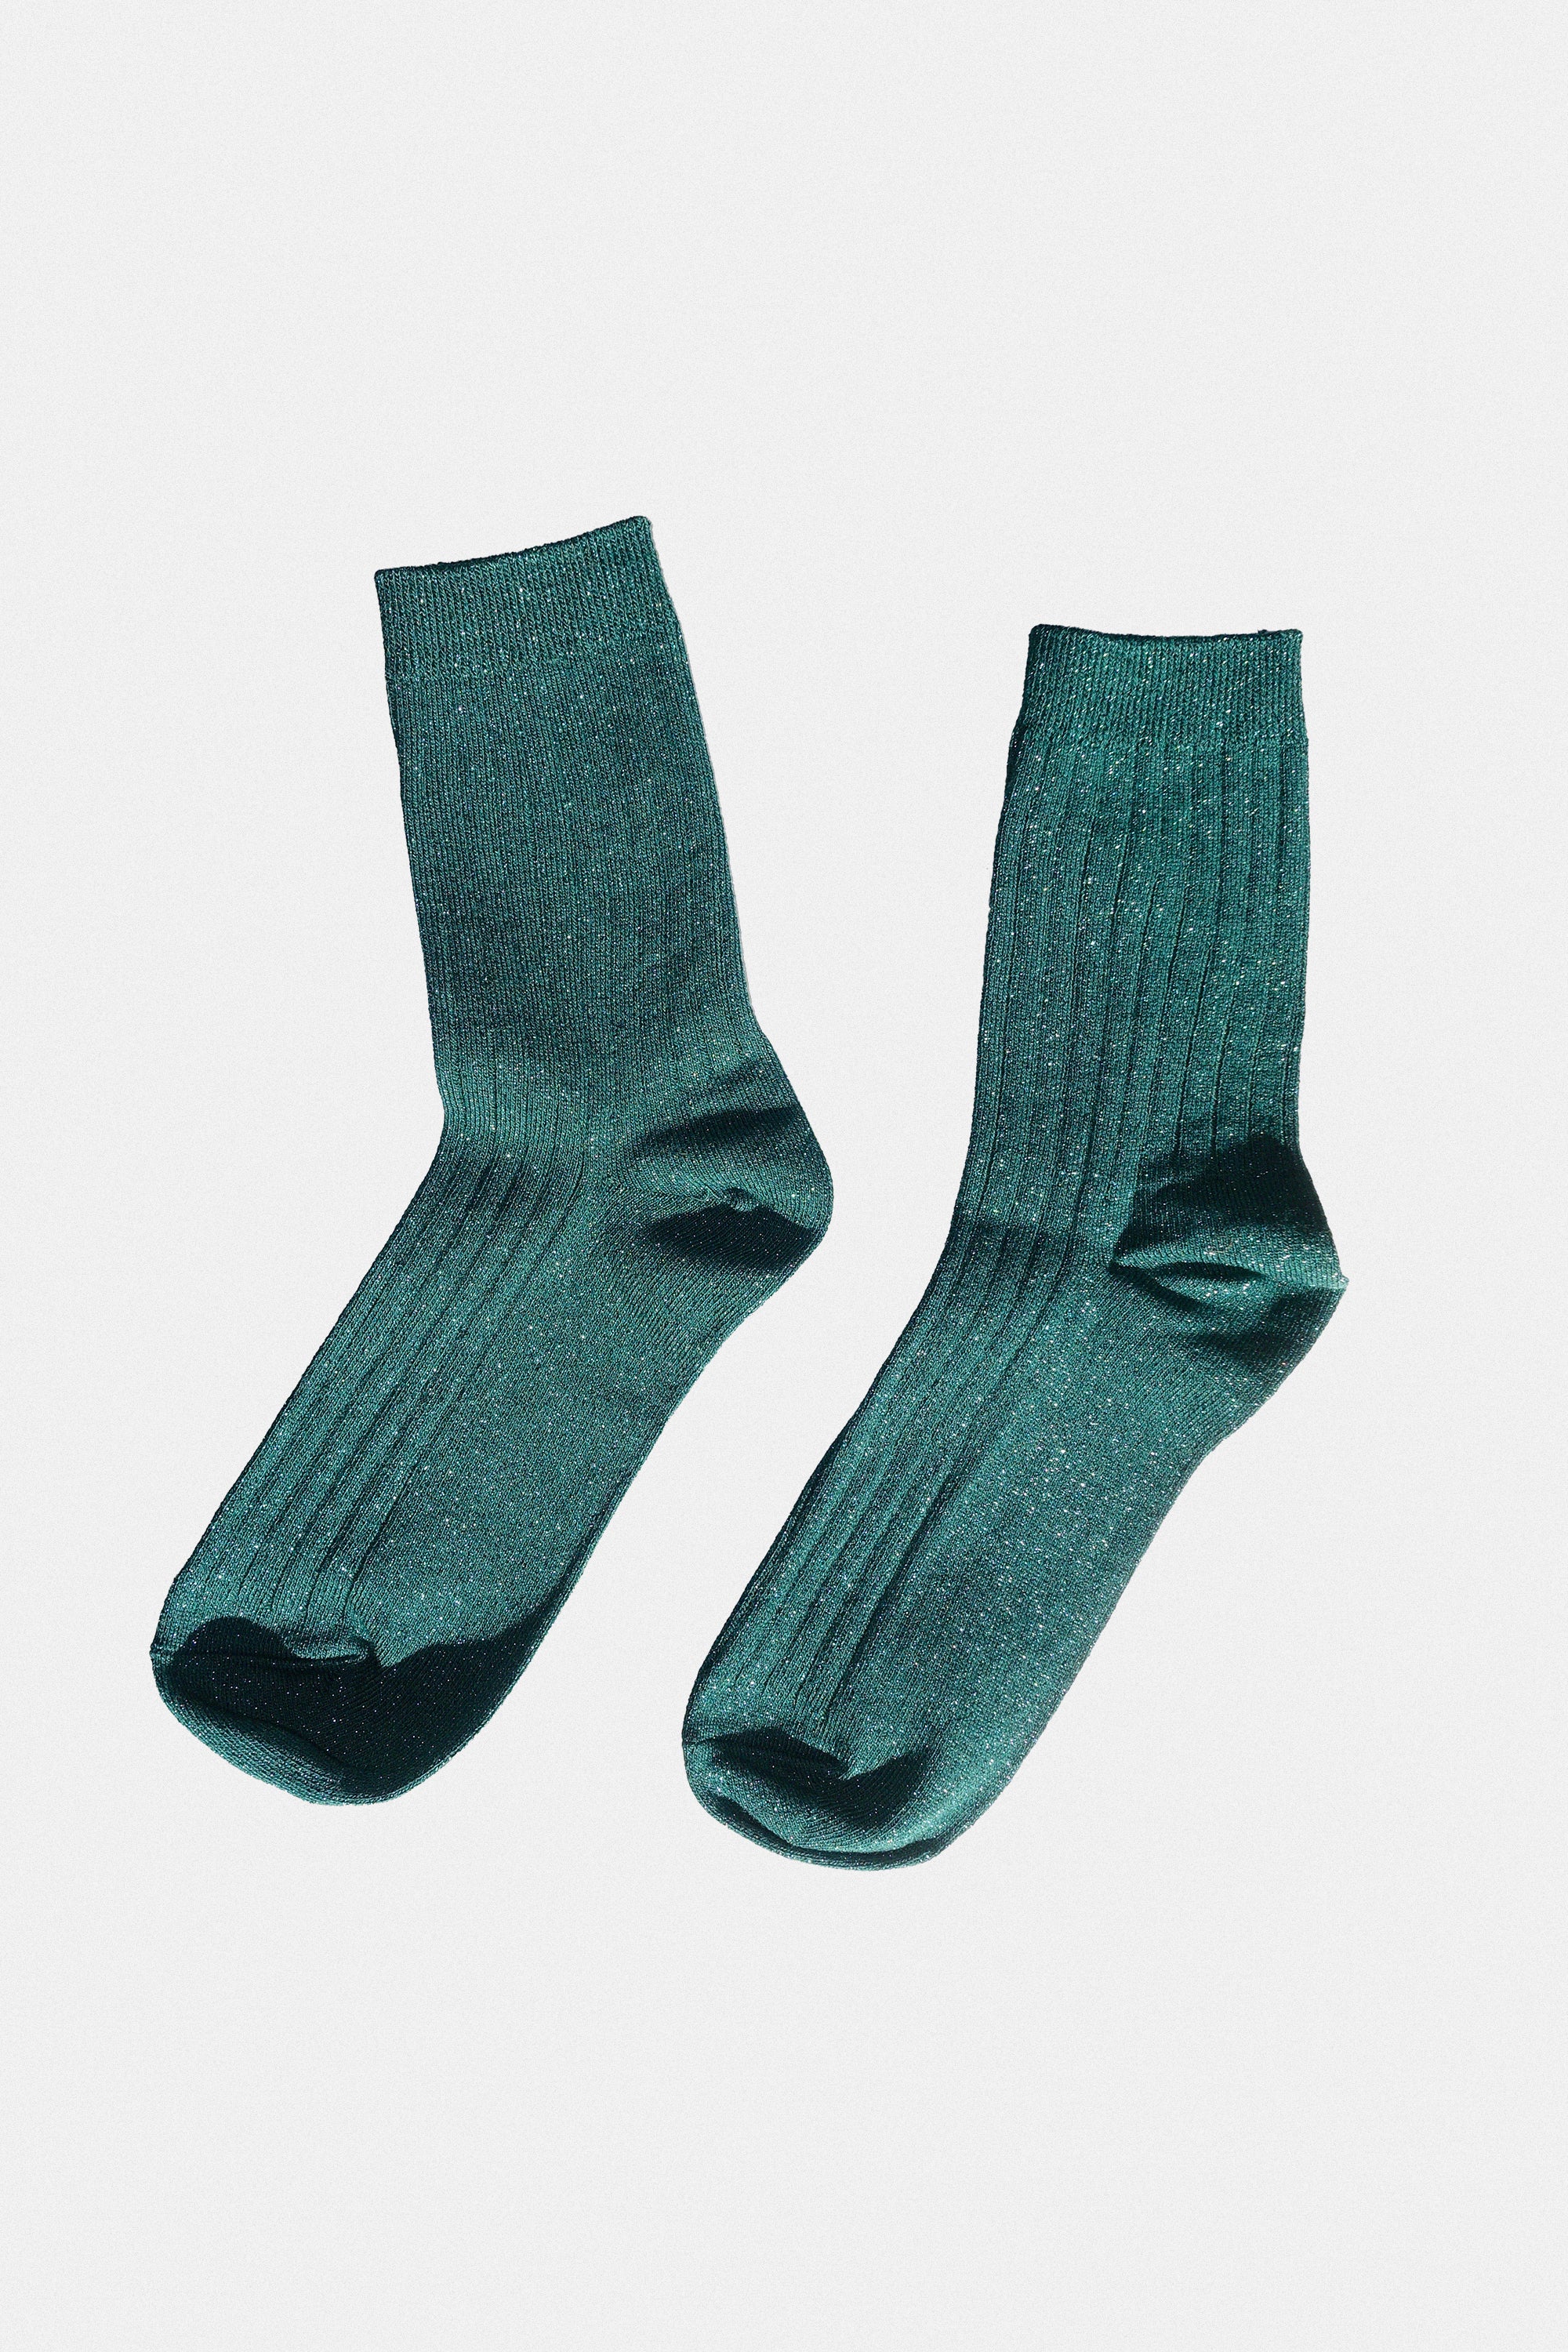 Her Socks in Spruce Glitter by Le Bon Shoppe